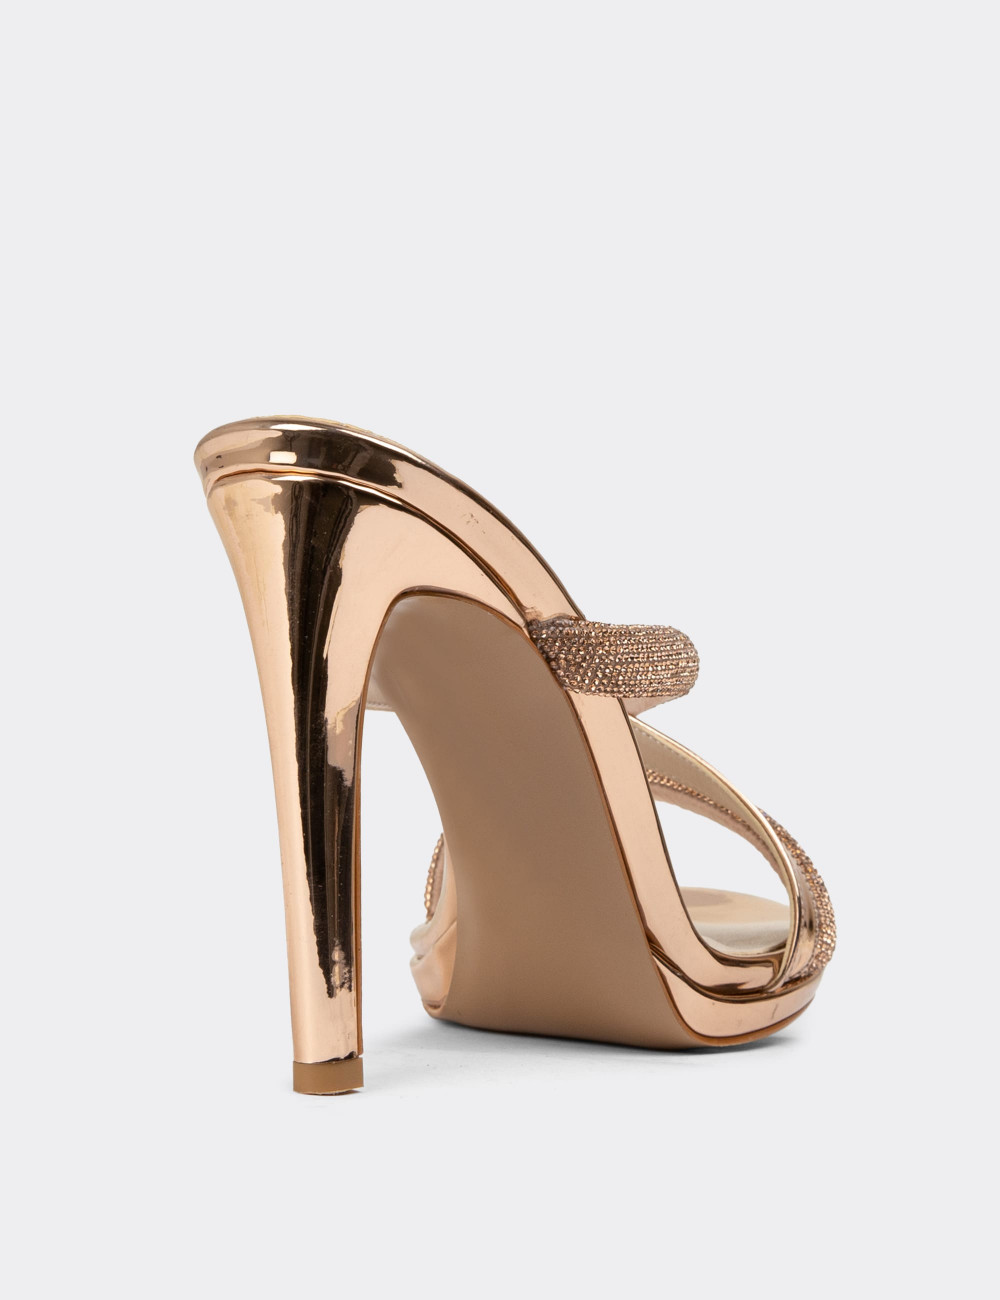 Altın Rengi Topuklu Kadın Taşlı Abiye Ayakkabı - H1708ZALTM01